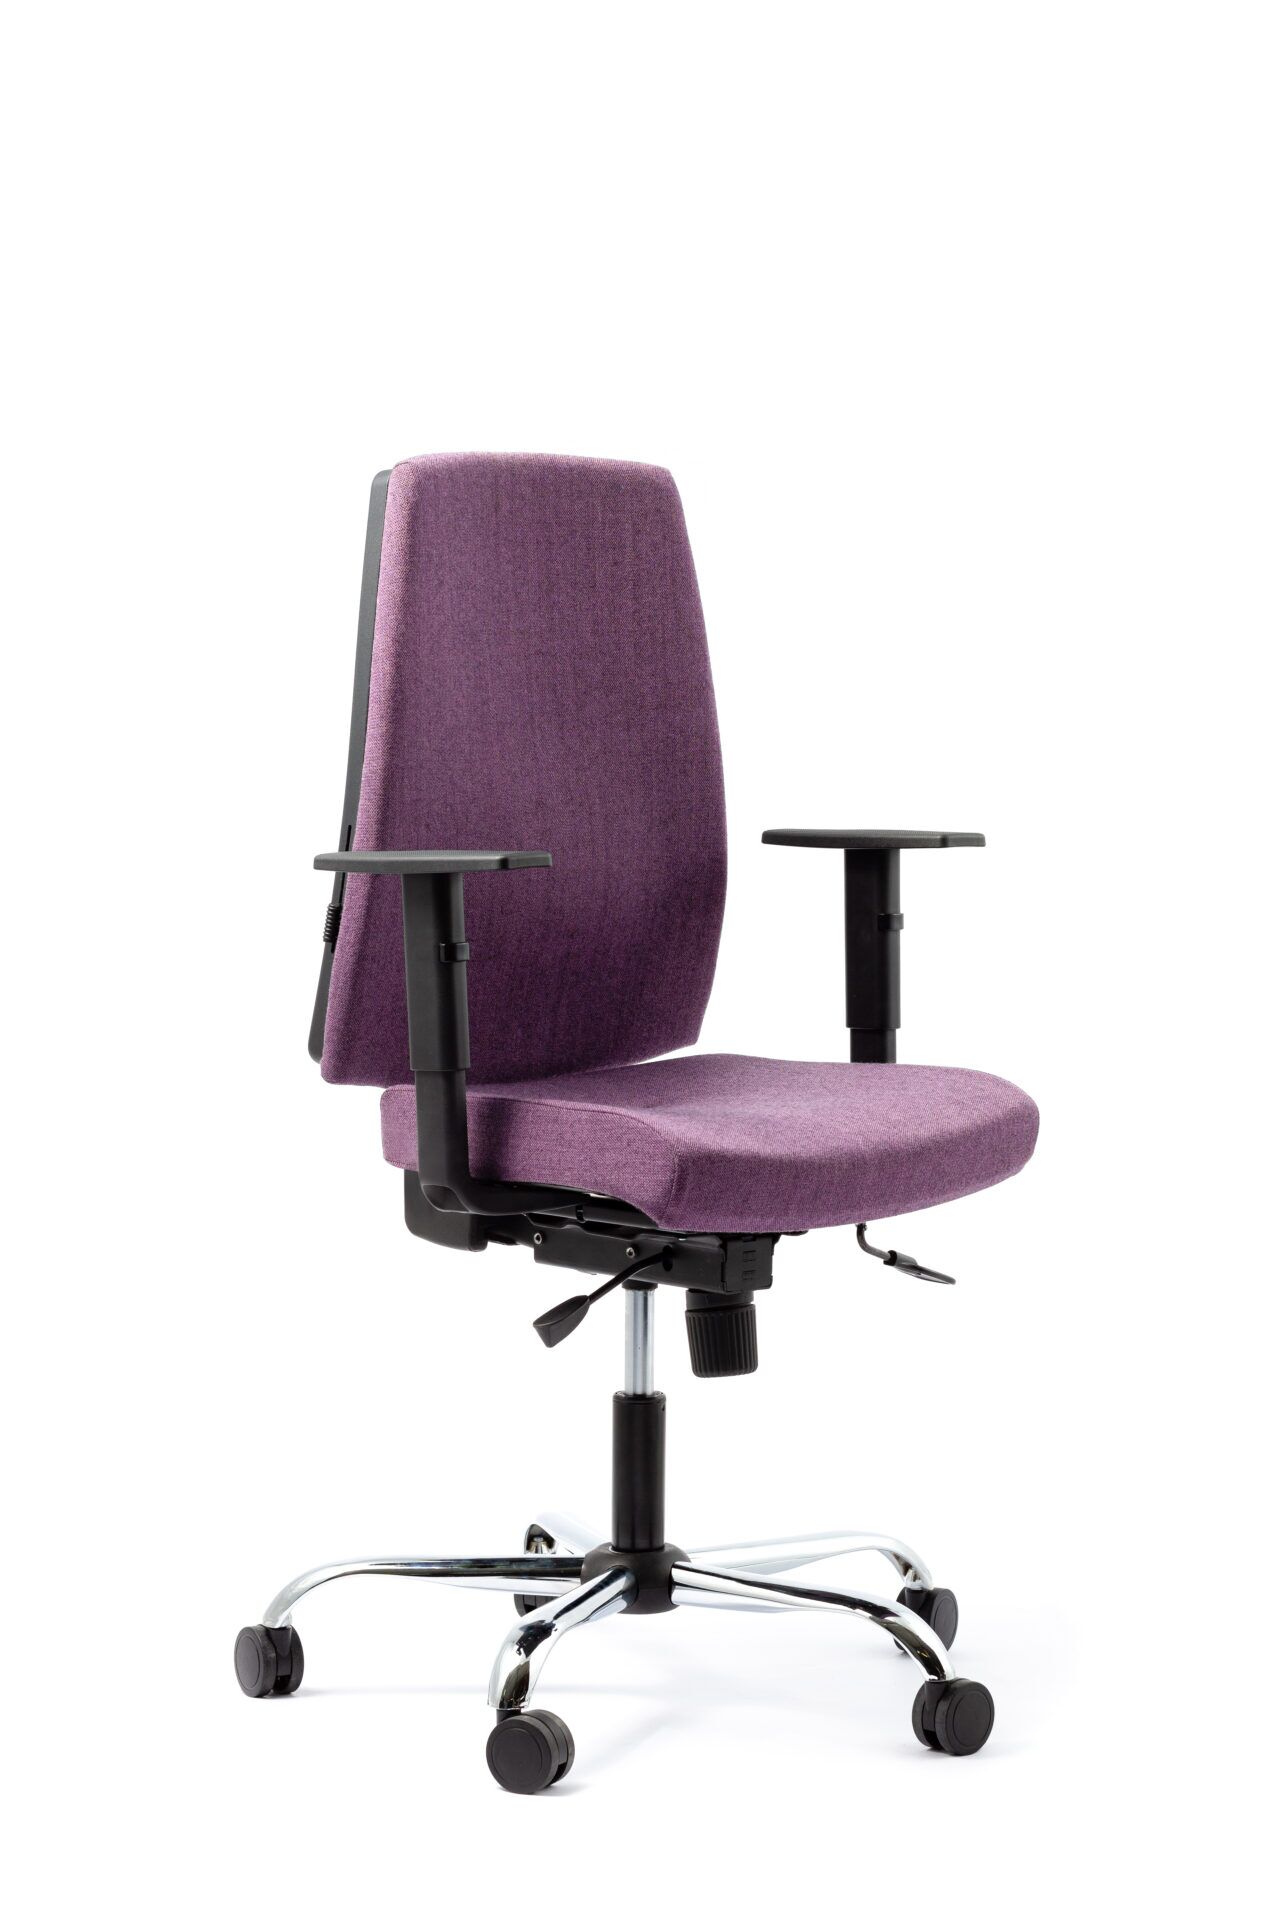 Fioletowy fotel biurowy - widoczny po skosie z przodu zdjęcie 8